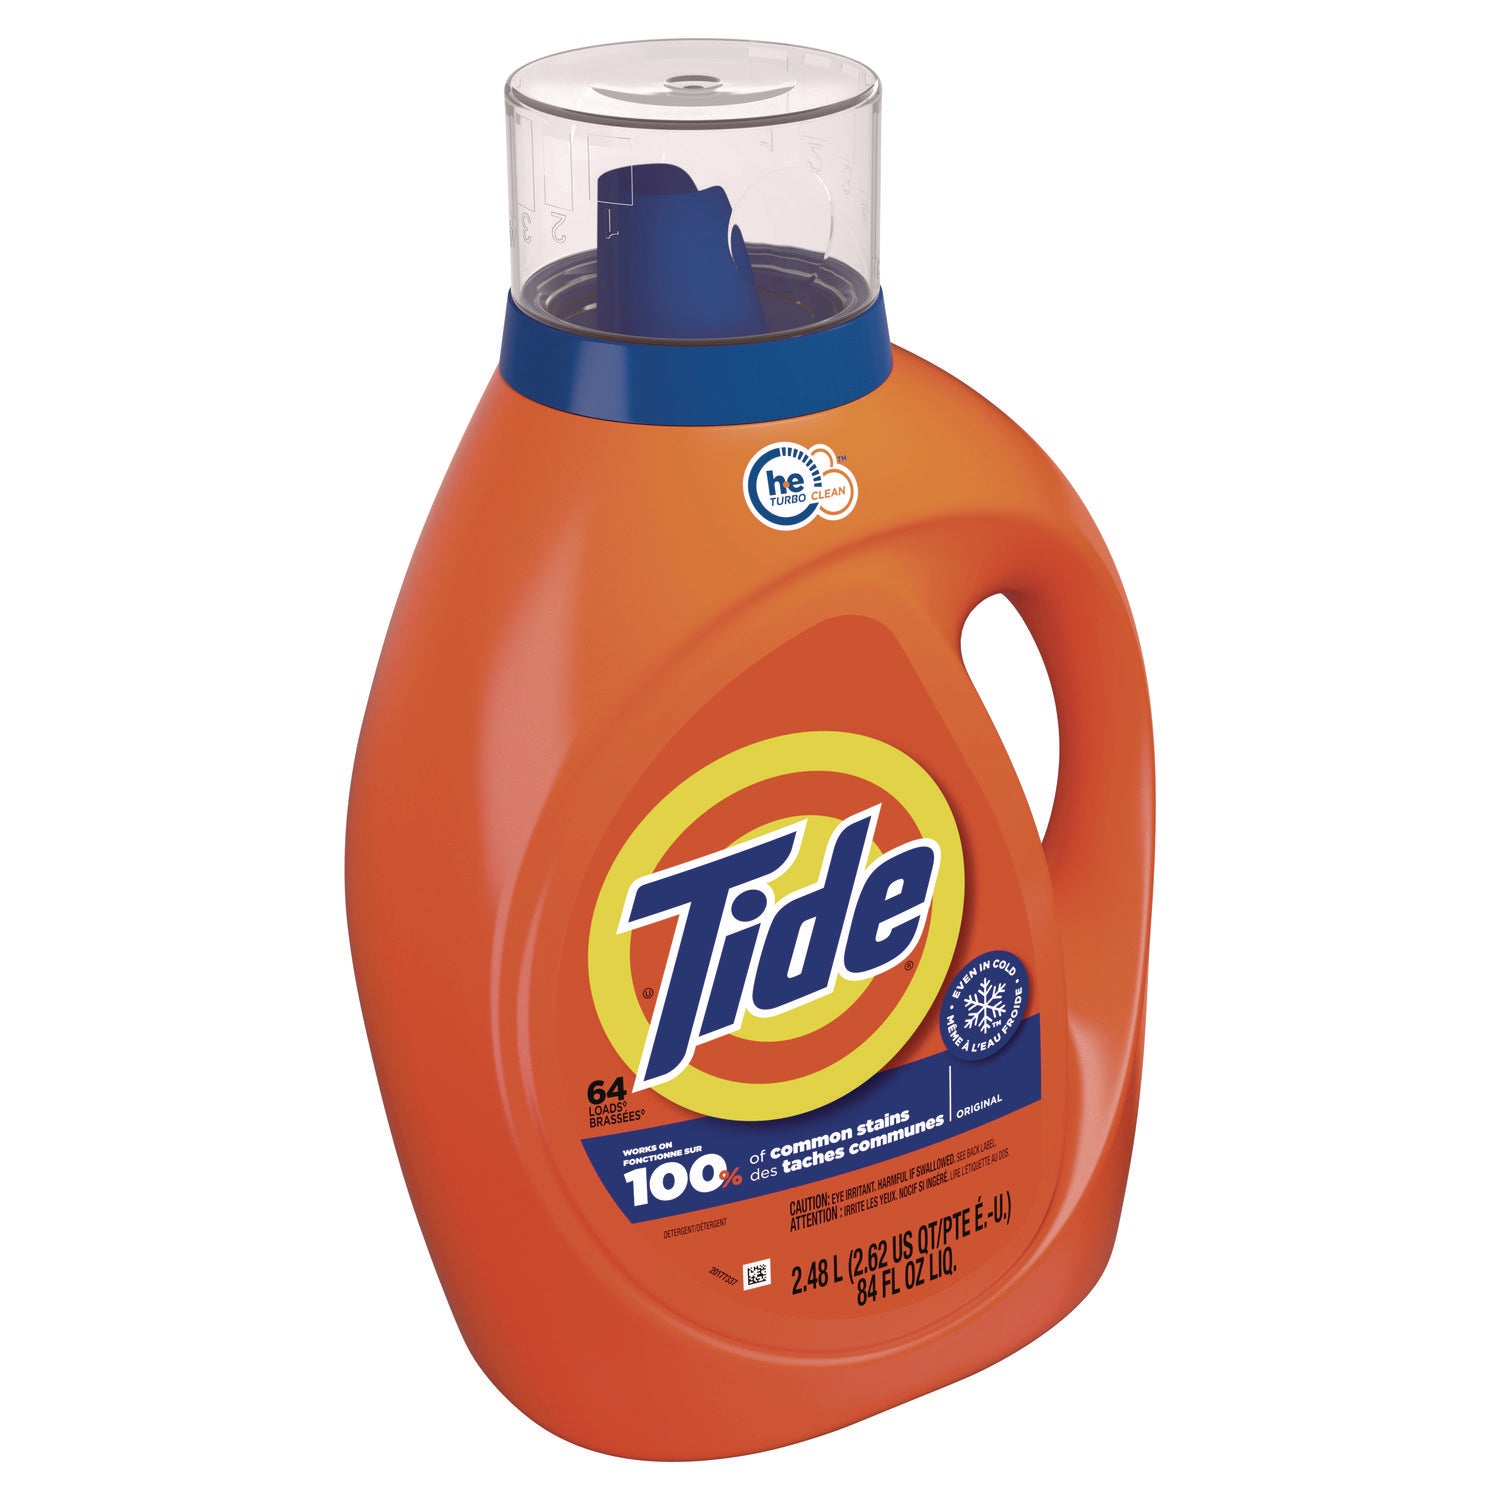 he-laundry-detergent-original-scent-liquid-64-loads-84-oz-bottle_pgc12110ea - 2